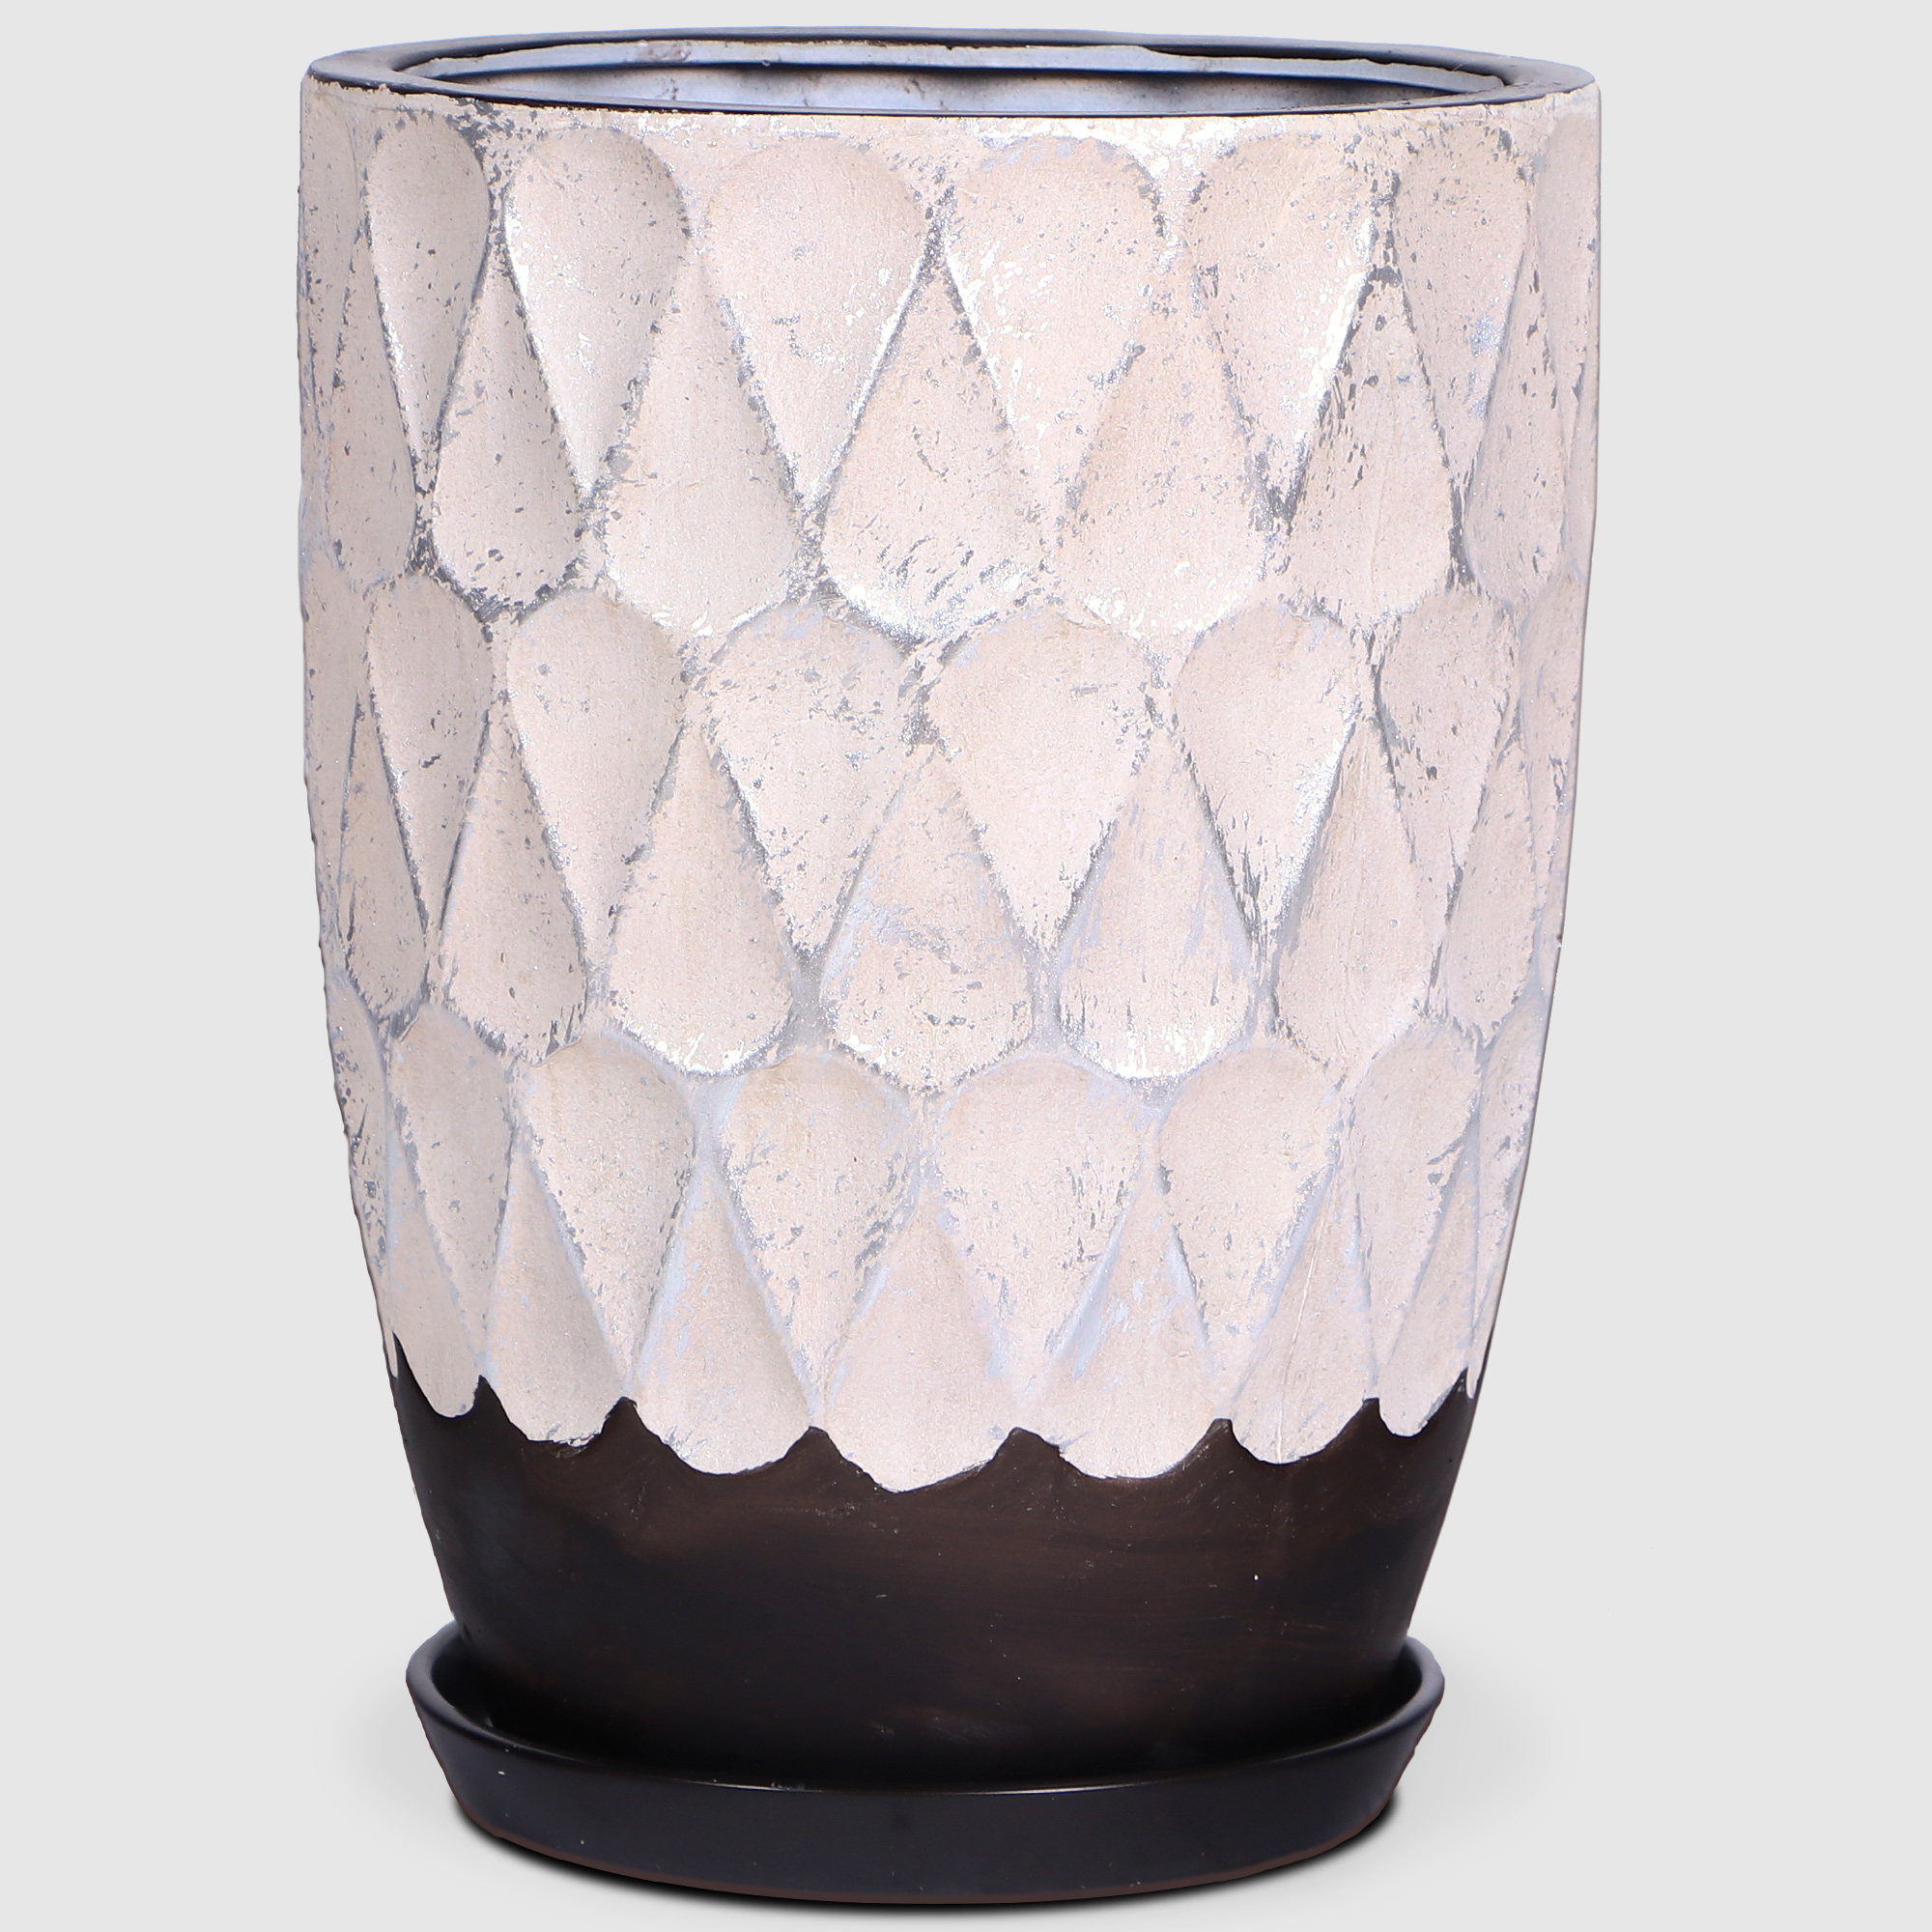 Горшок керамический Qianjin для цветов бежевый/серебристый 32,5 см с поддоном